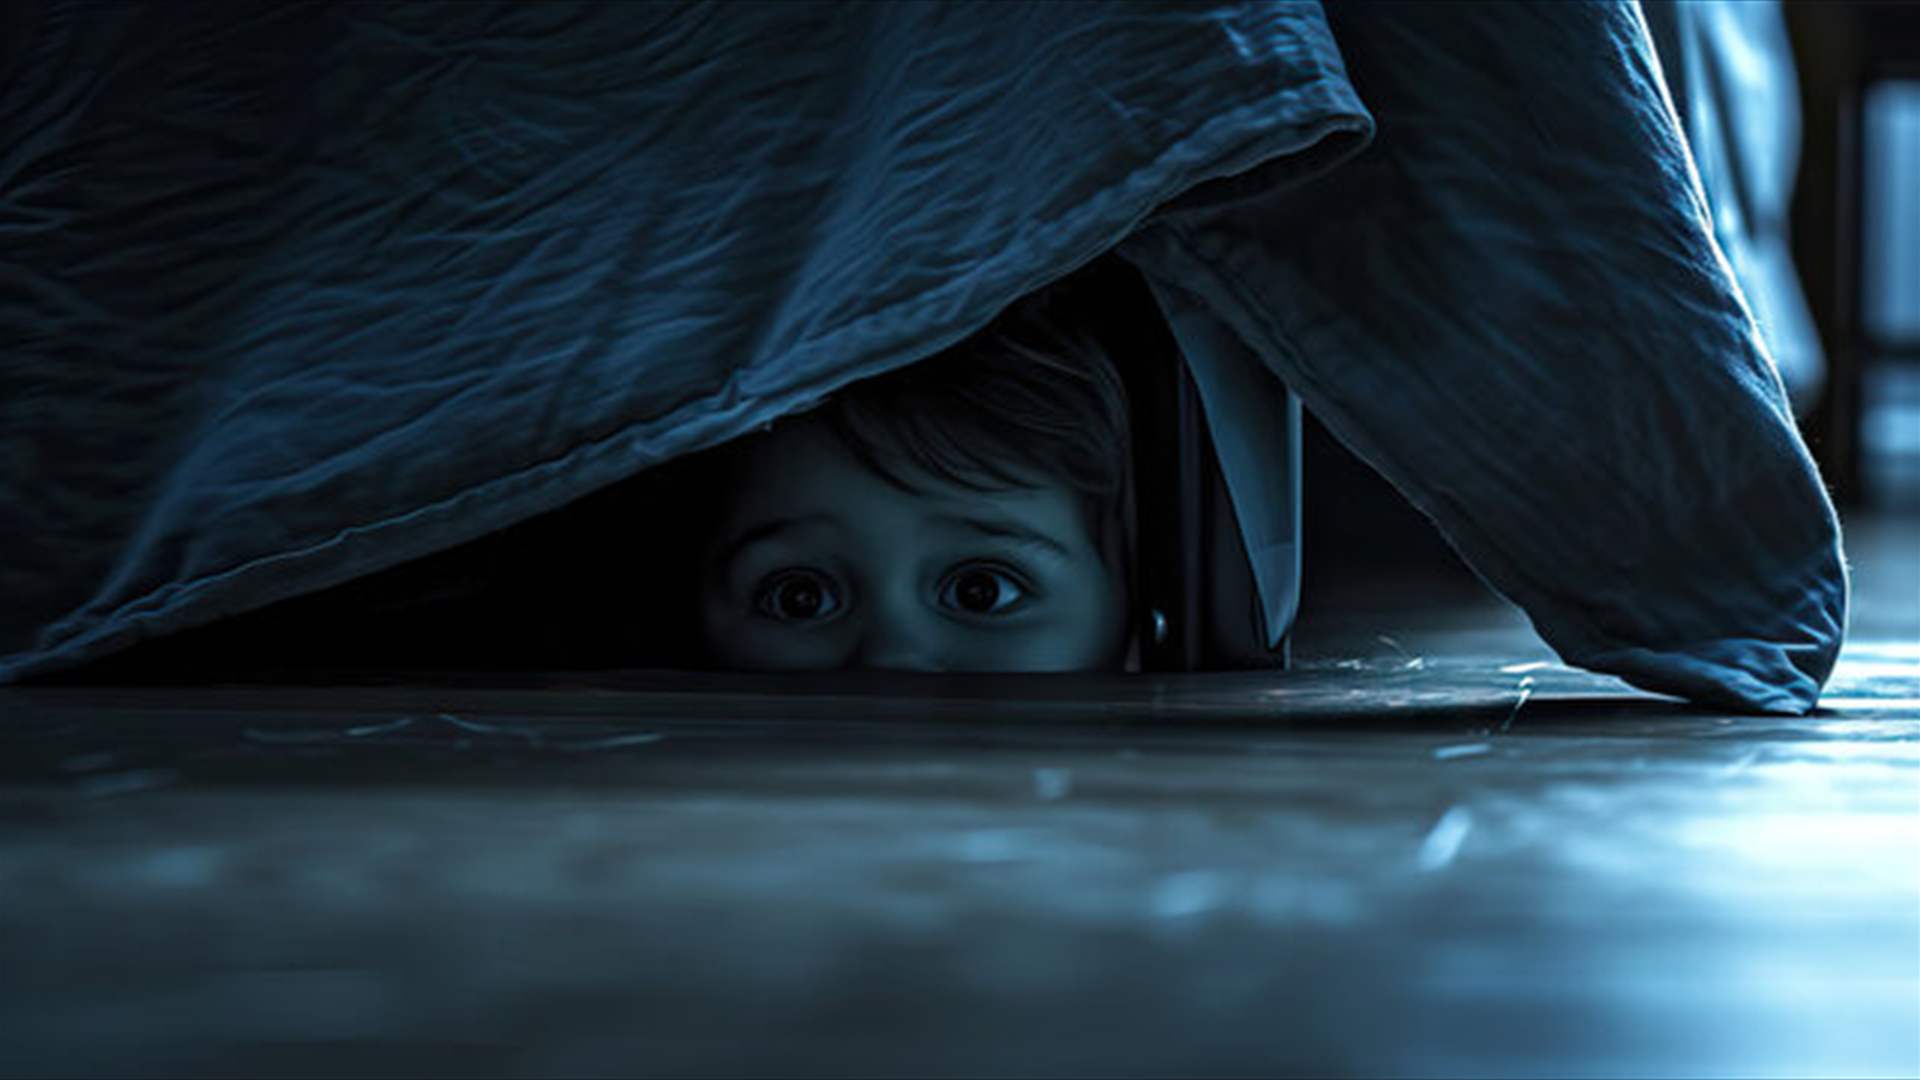 ما اكتشفه هذا الطفل تحت سريره مرعب... عثر على &quot;البعبع الحقيقي&quot;: &quot;كان يرتدي ملابسي الداخلية&quot;!